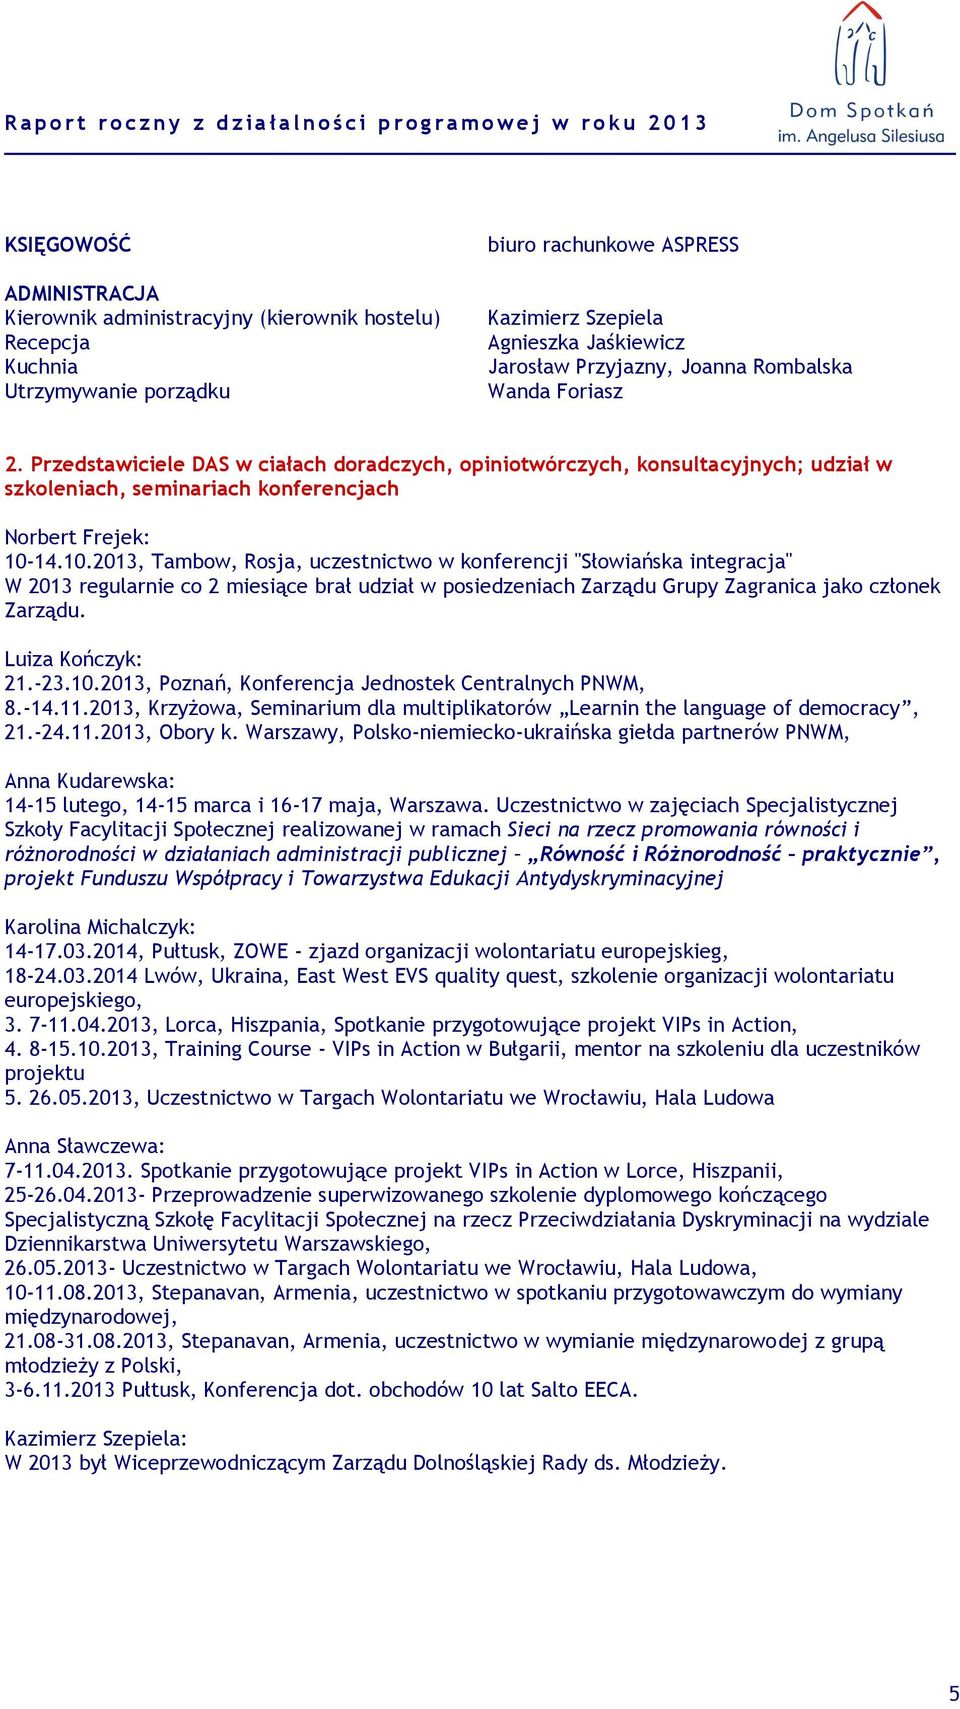 14.10.2013, Tambow, Rosja, uczestnictwo w konferencji "Słowiańska integracja" W 2013 regularnie co 2 miesiące brał udział w posiedzeniach Zarządu Grupy Zagranica jako członek Zarządu.